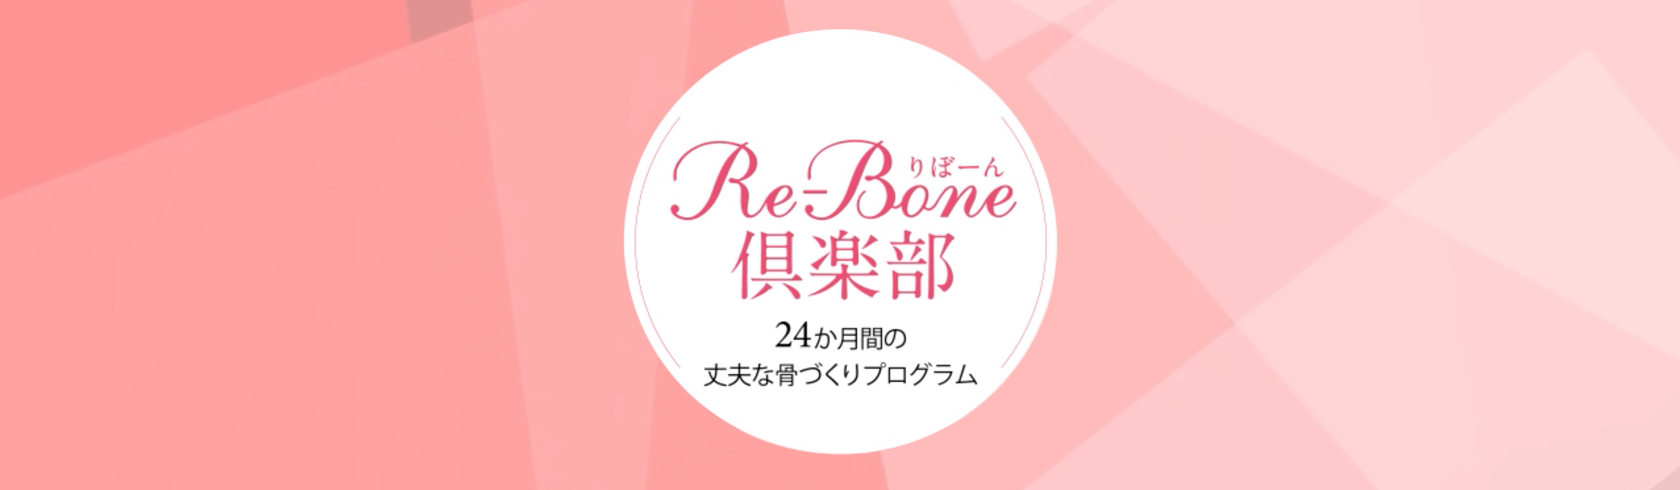 Re-Bone倶楽部 24か月間の丈夫な骨づくりプログラム